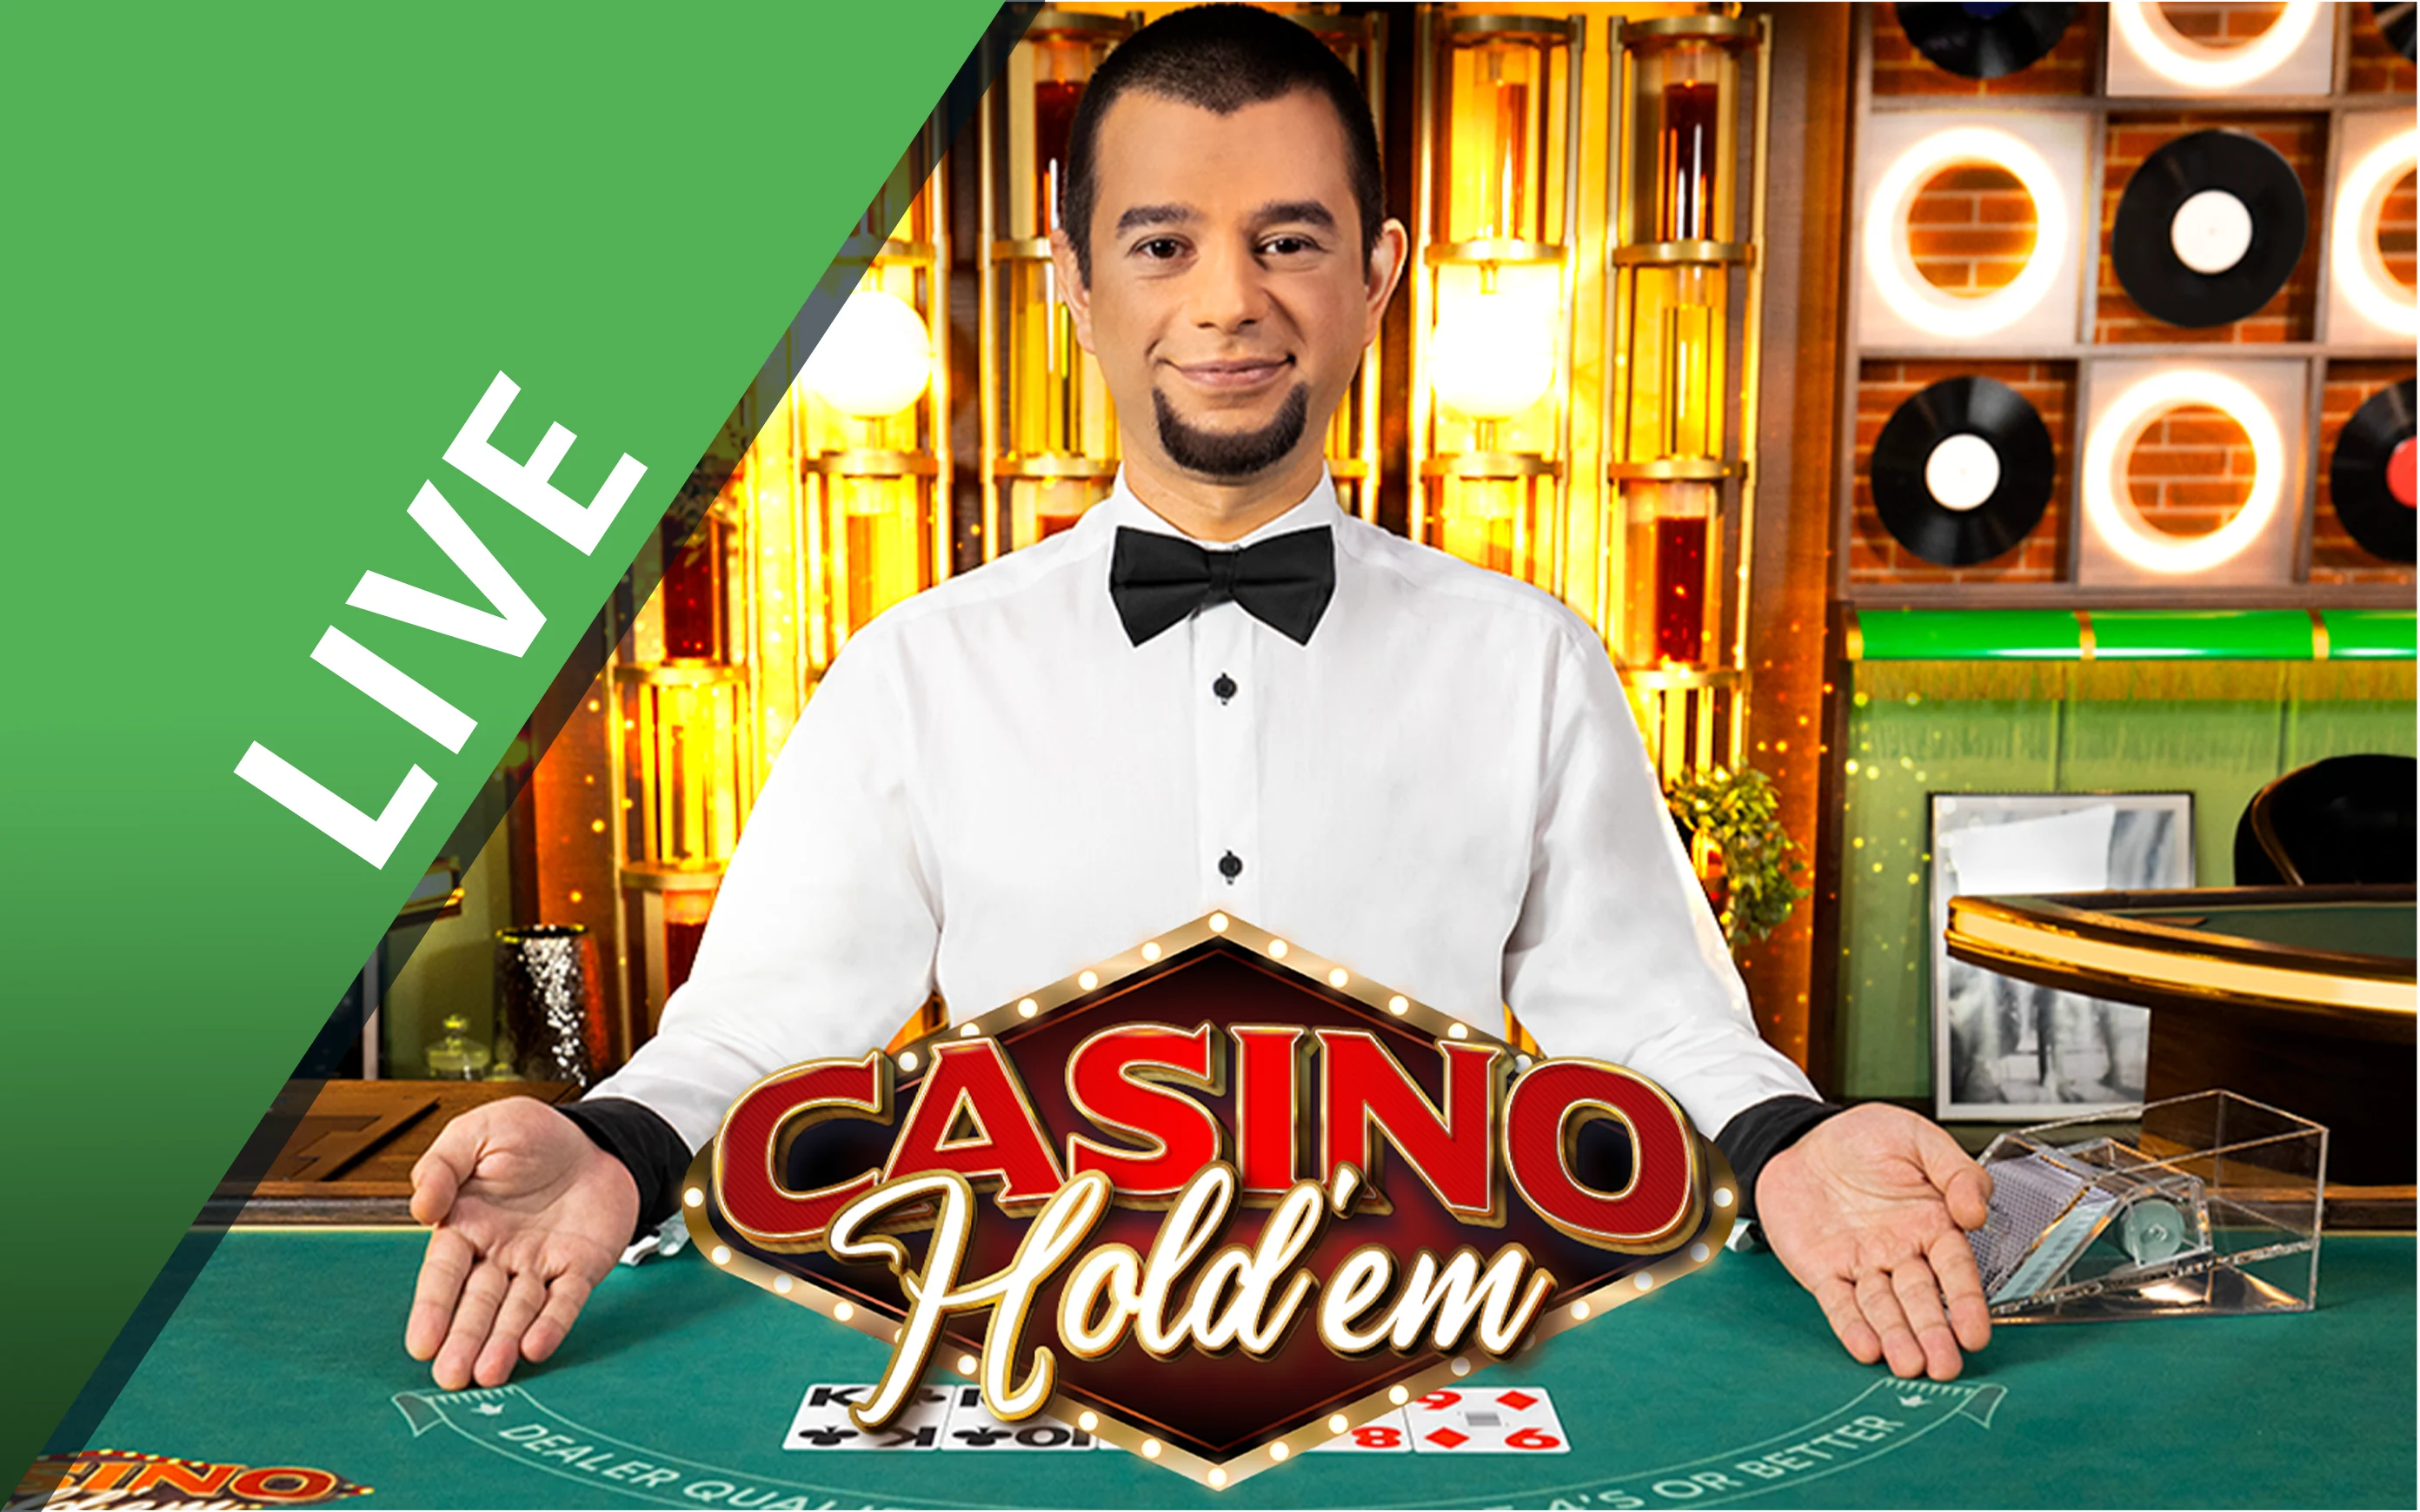 Spil Casino Hold'em på Starcasino.be online kasino
